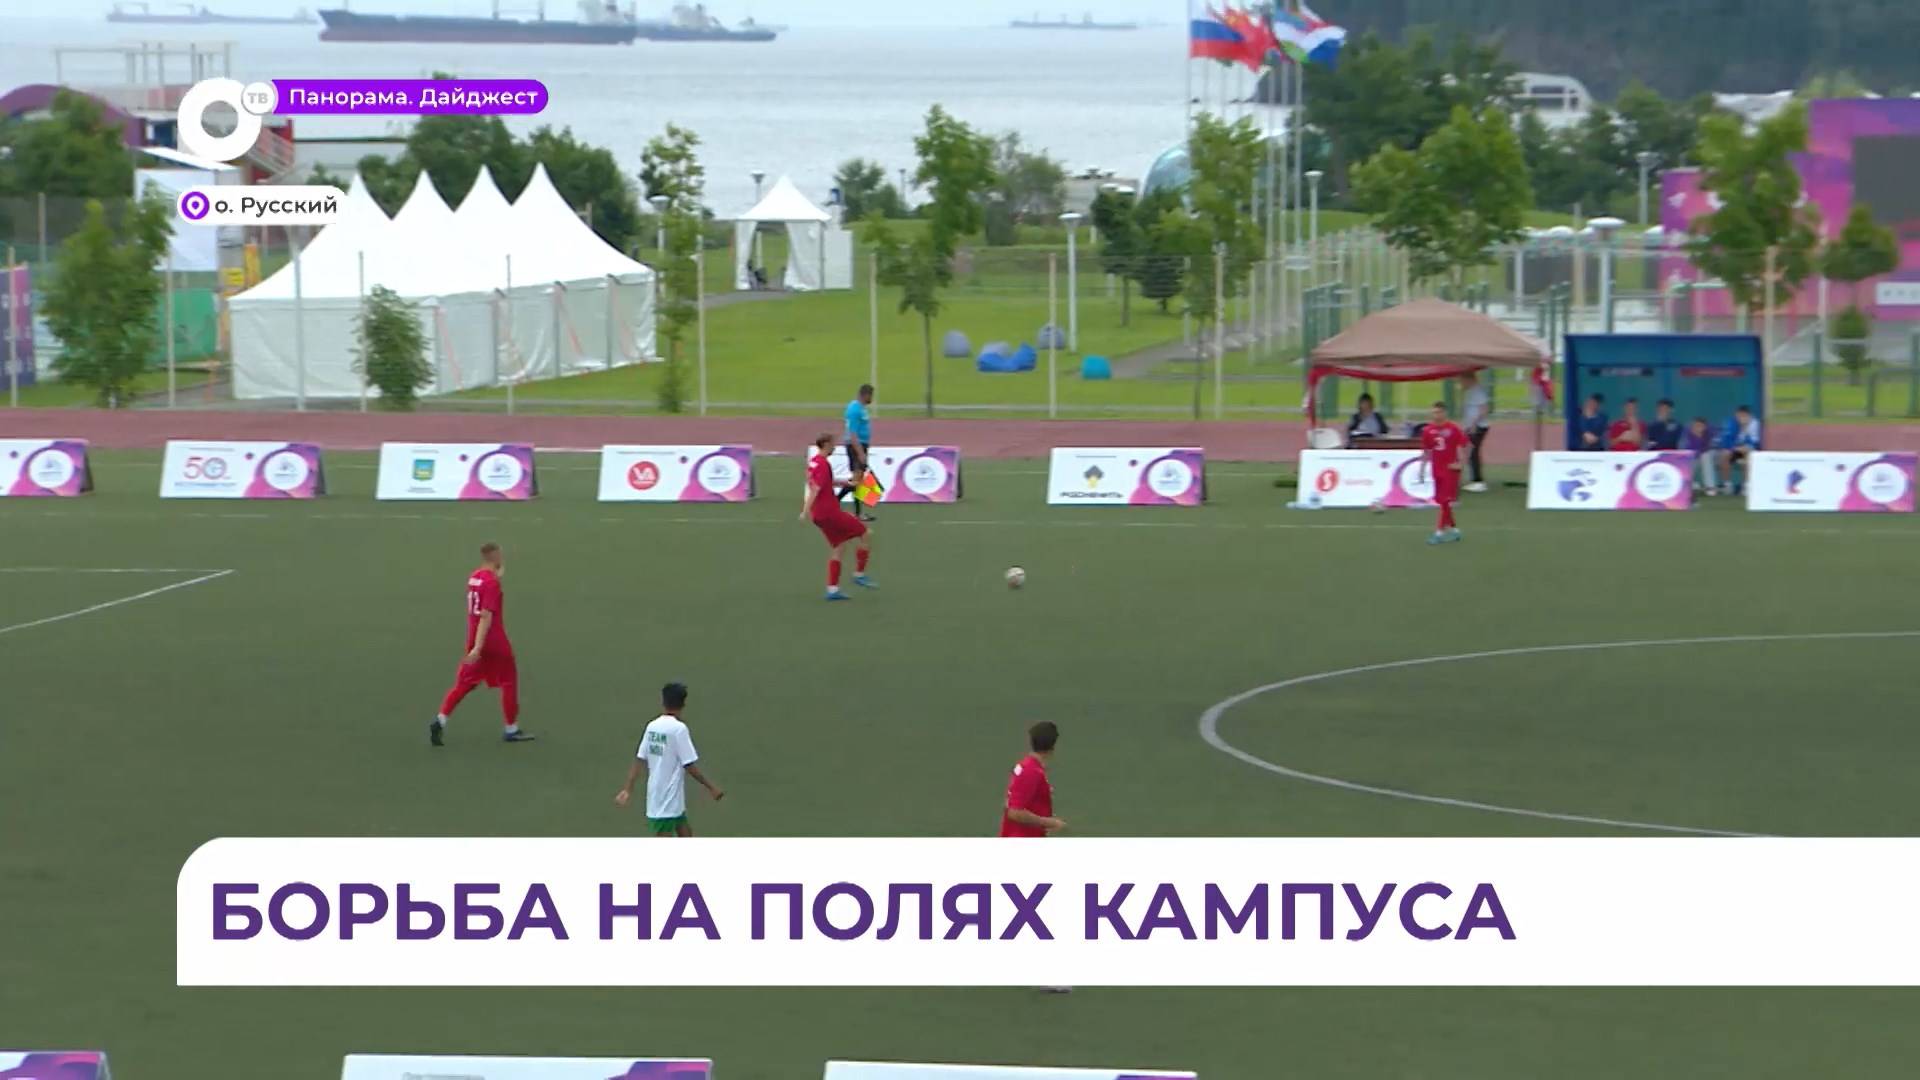 Во Владивостоке продолжается борьба на студенческих играх за золотые медали и кубок по футболу